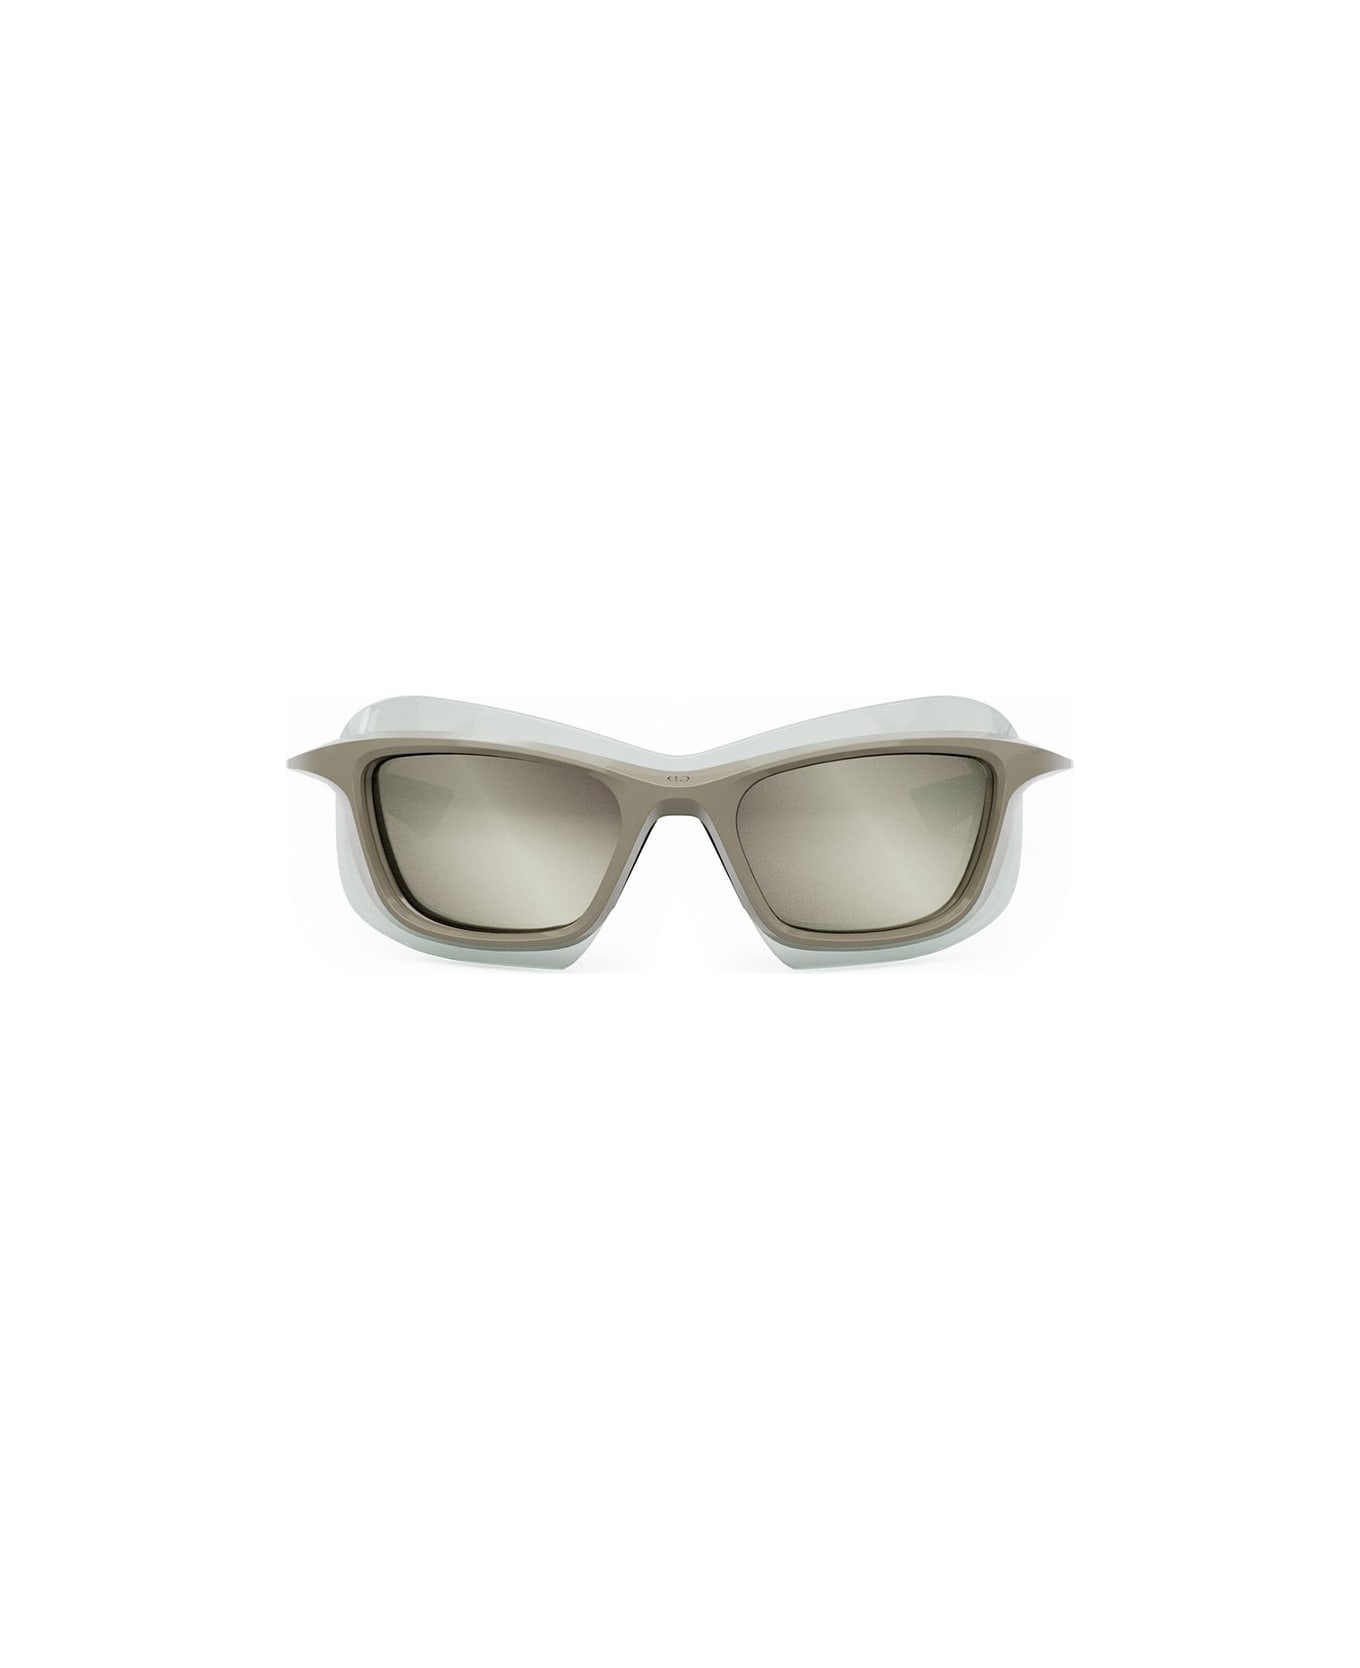 Dior Eyewear Sunglasses - Marrone lucido/Specchiato silver